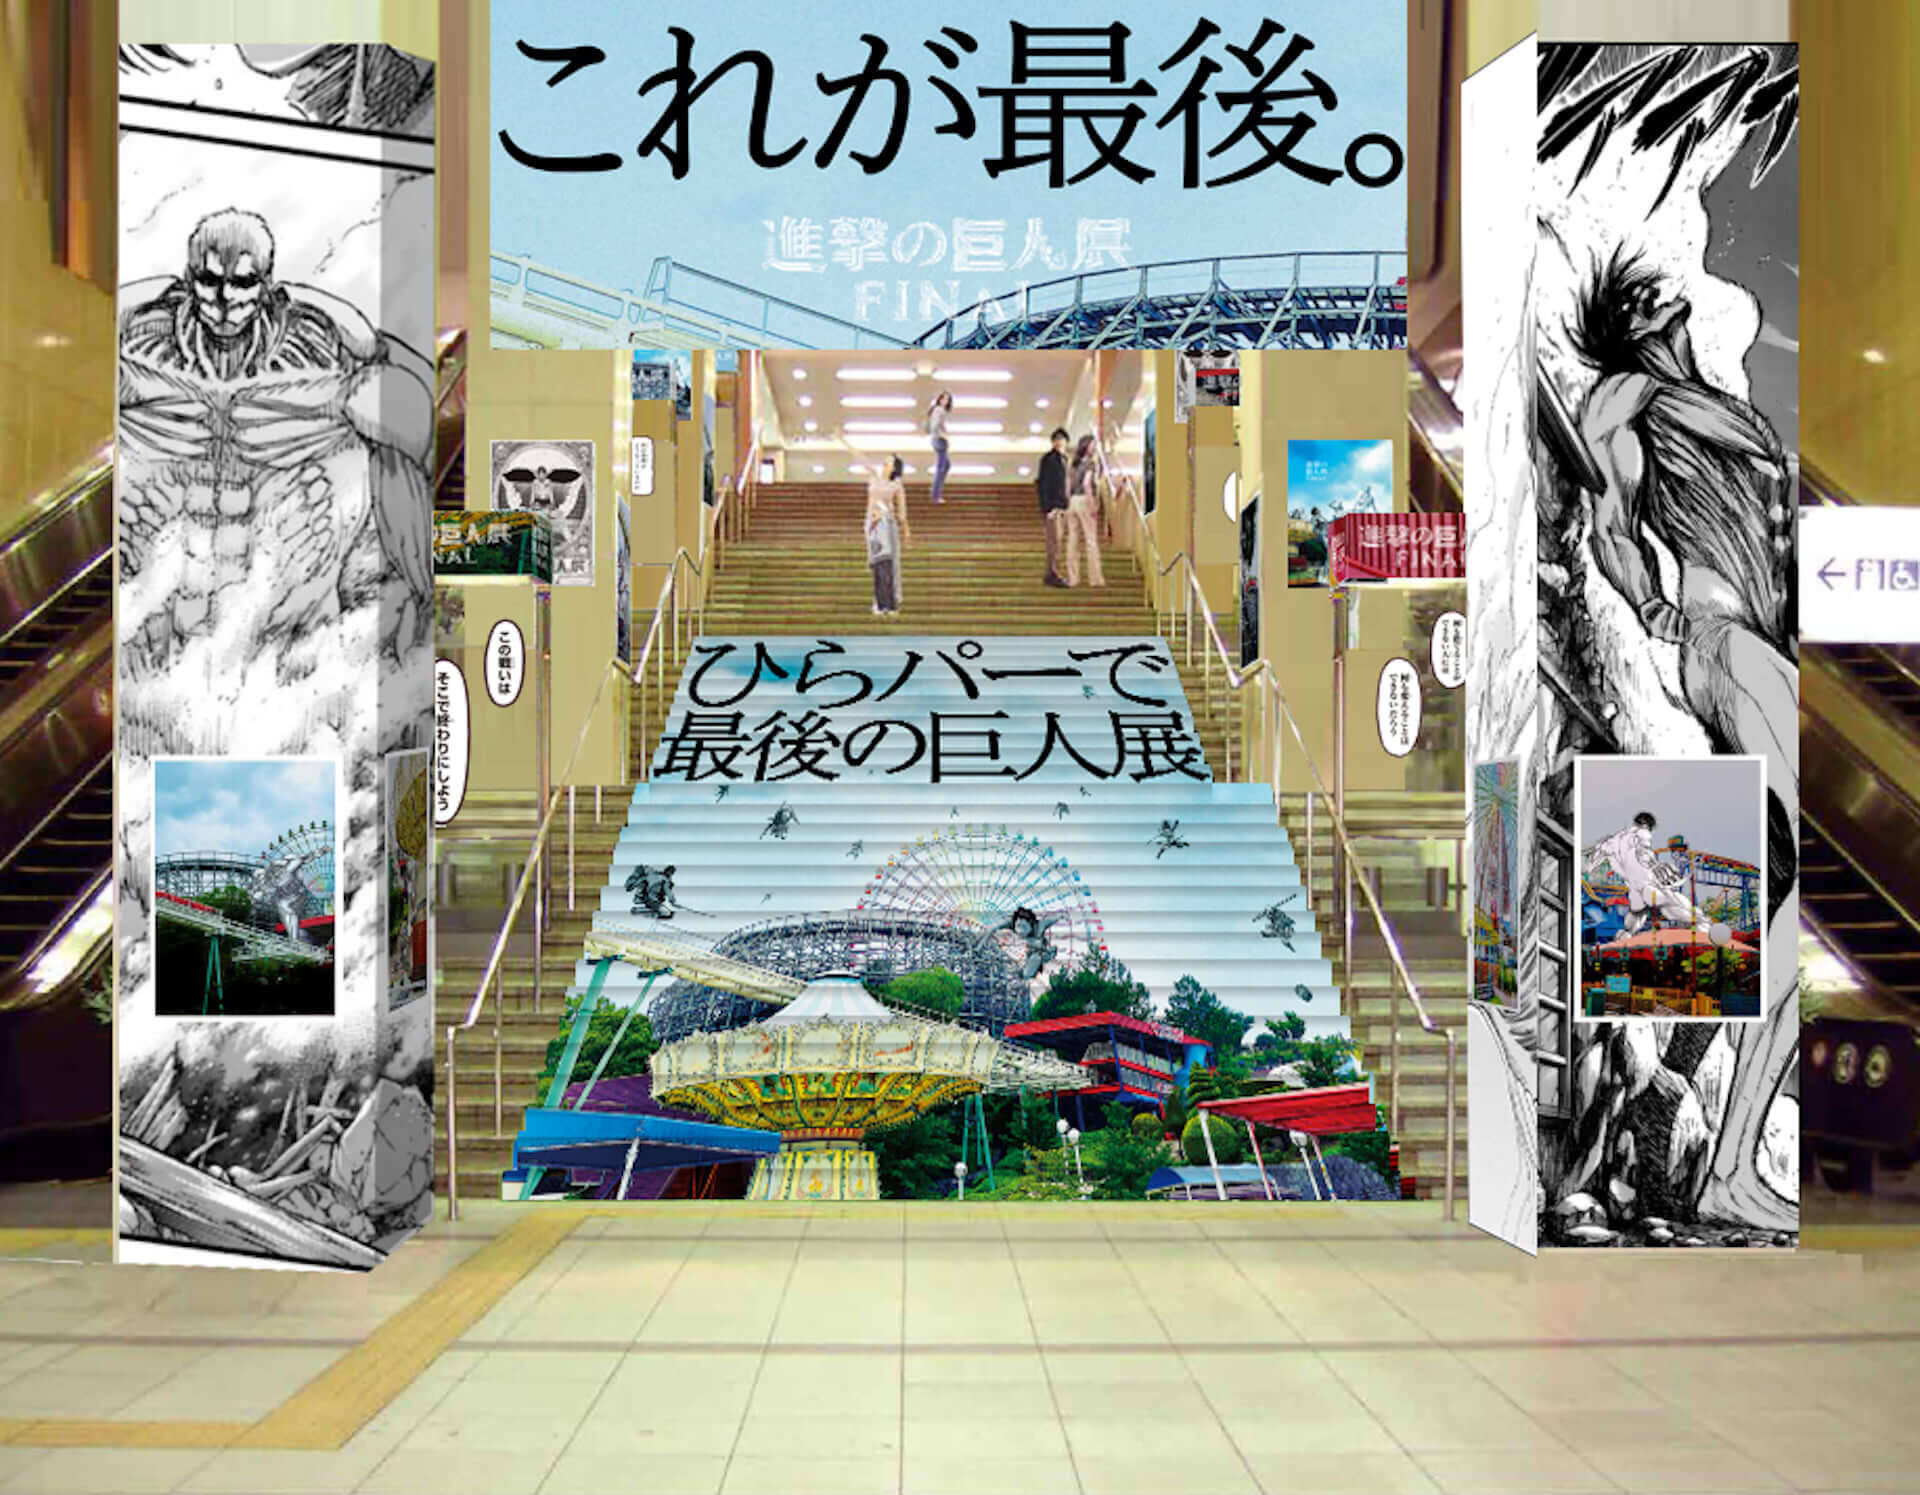 進撃の巨人がひらパーに襲来 進撃の巨人展finalinひらかたパーク が開催 大阪展限定描き下ろしアニメイラストも公開 19年9月13日 エキサイトニュース 4 5